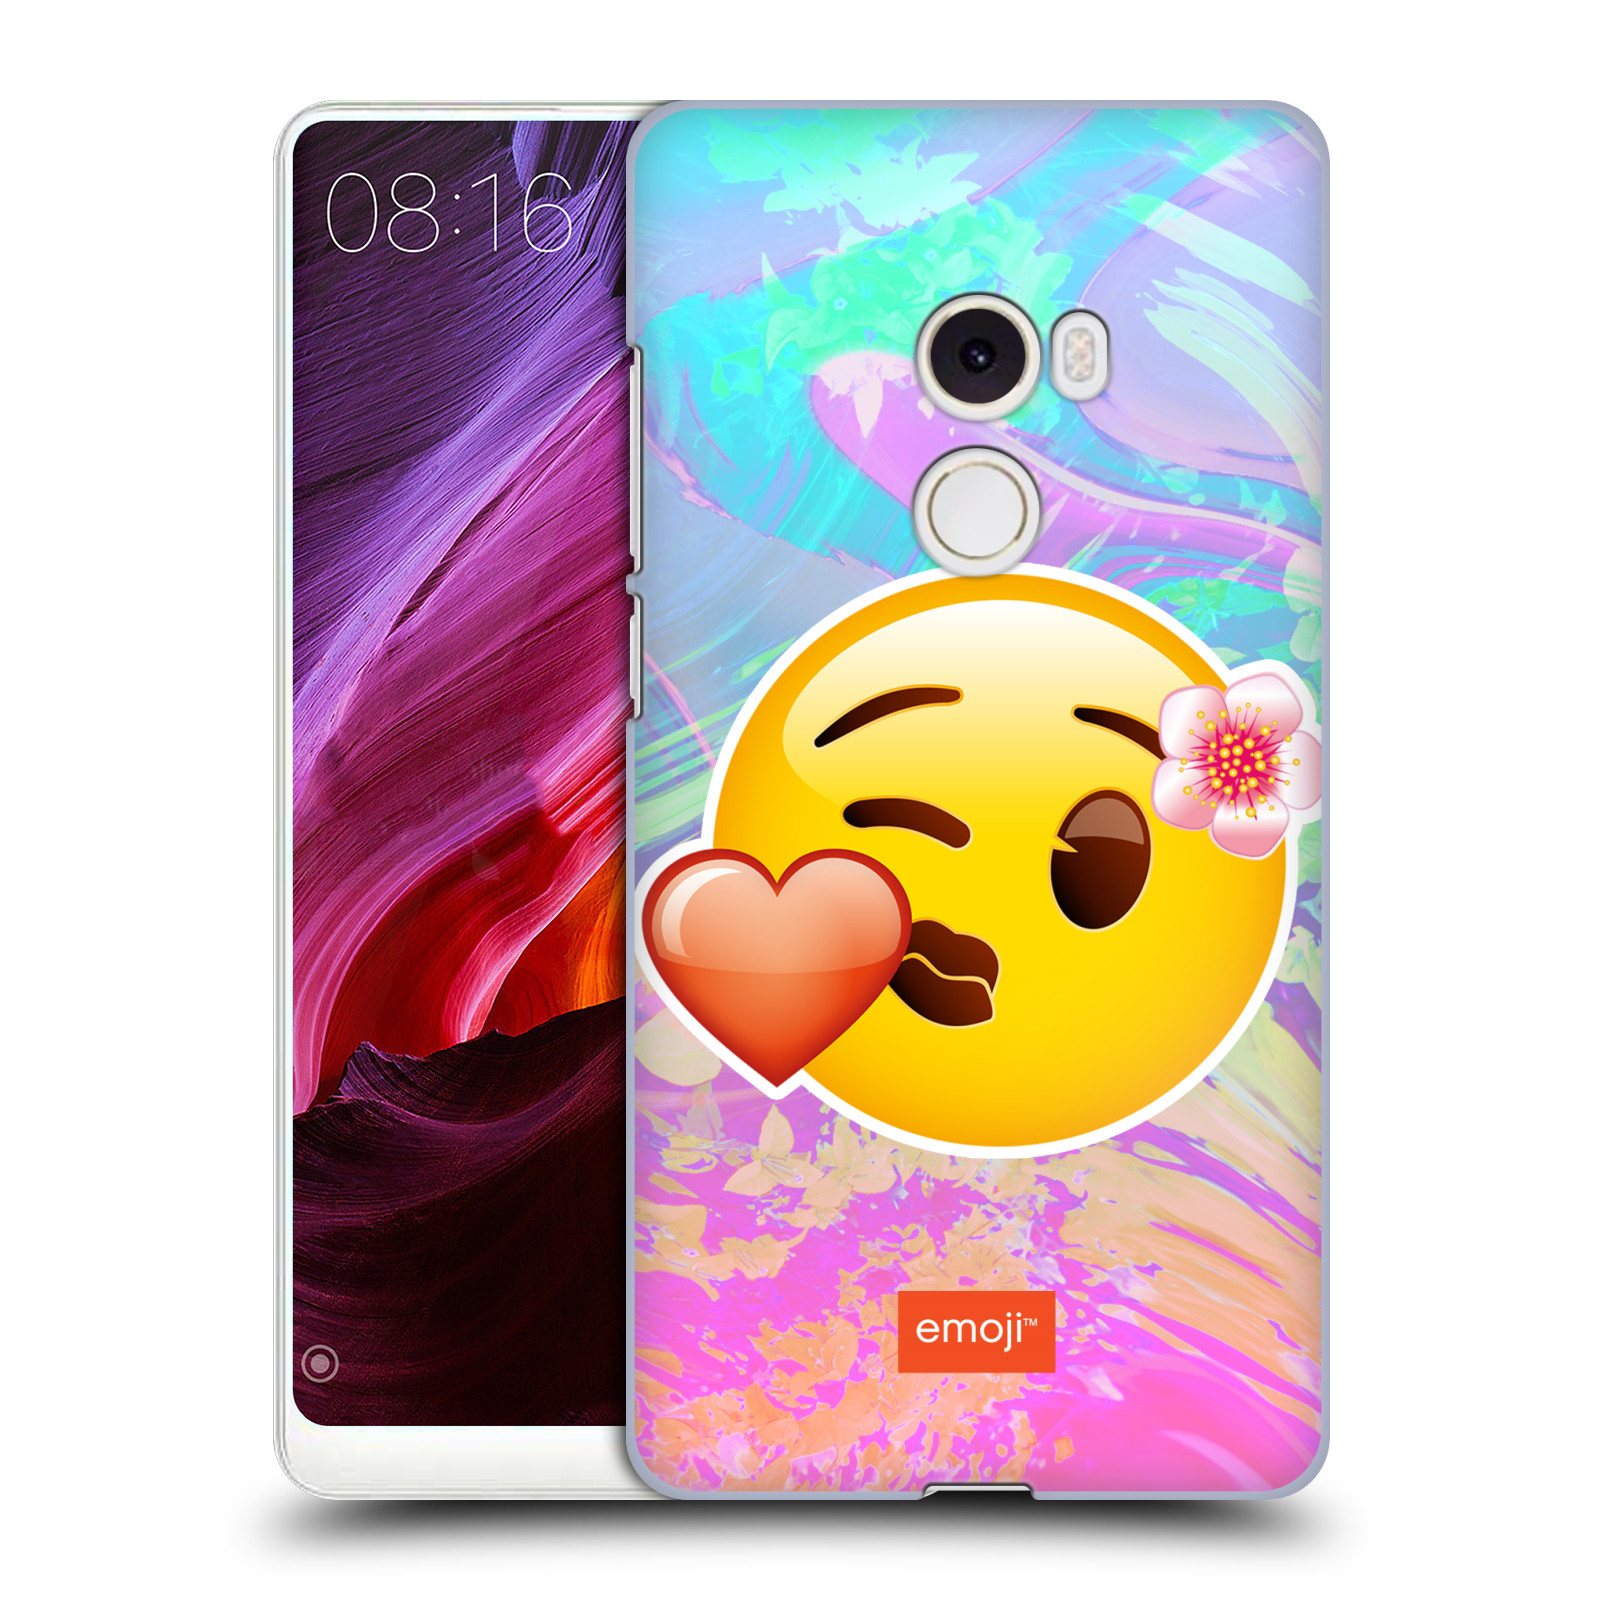 Pouzdro na mobil Xiaomi Mi Mix 2 - HEAD CASE - Emoji smajlík pusinka